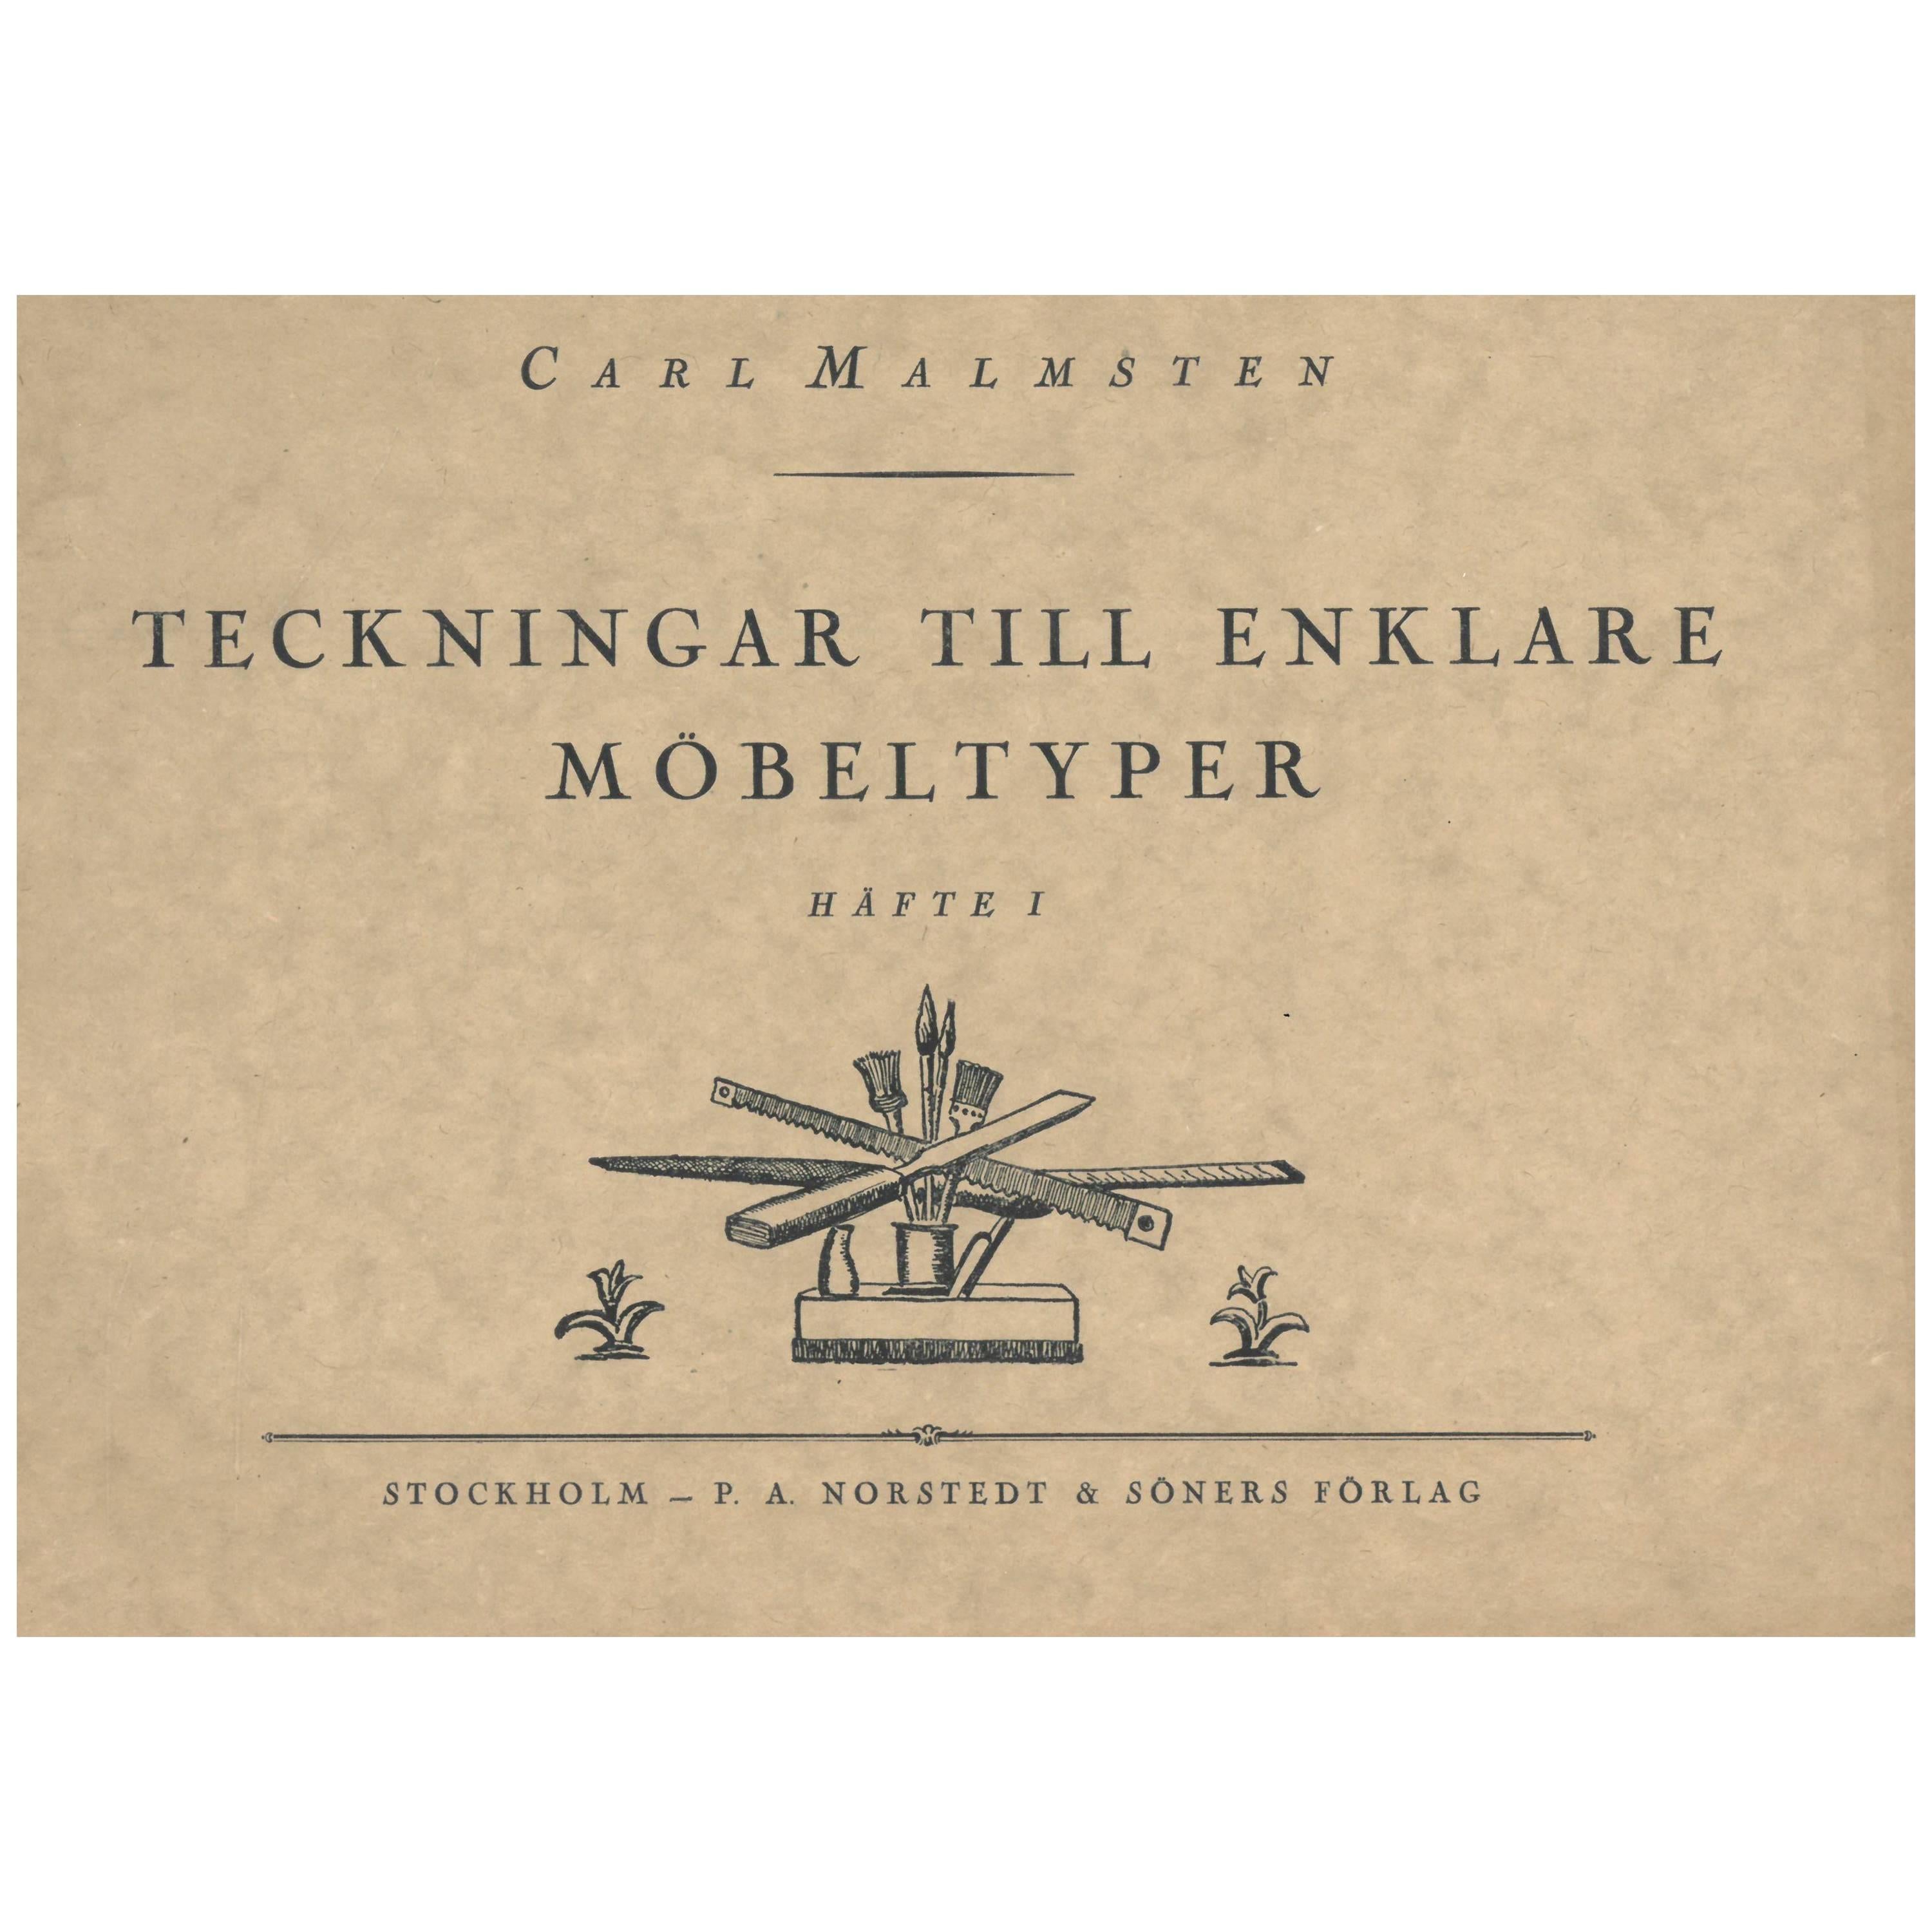 Teckningar Till Enklare Mobeltyper by Carl Malmsten 2 Volumes (Book)